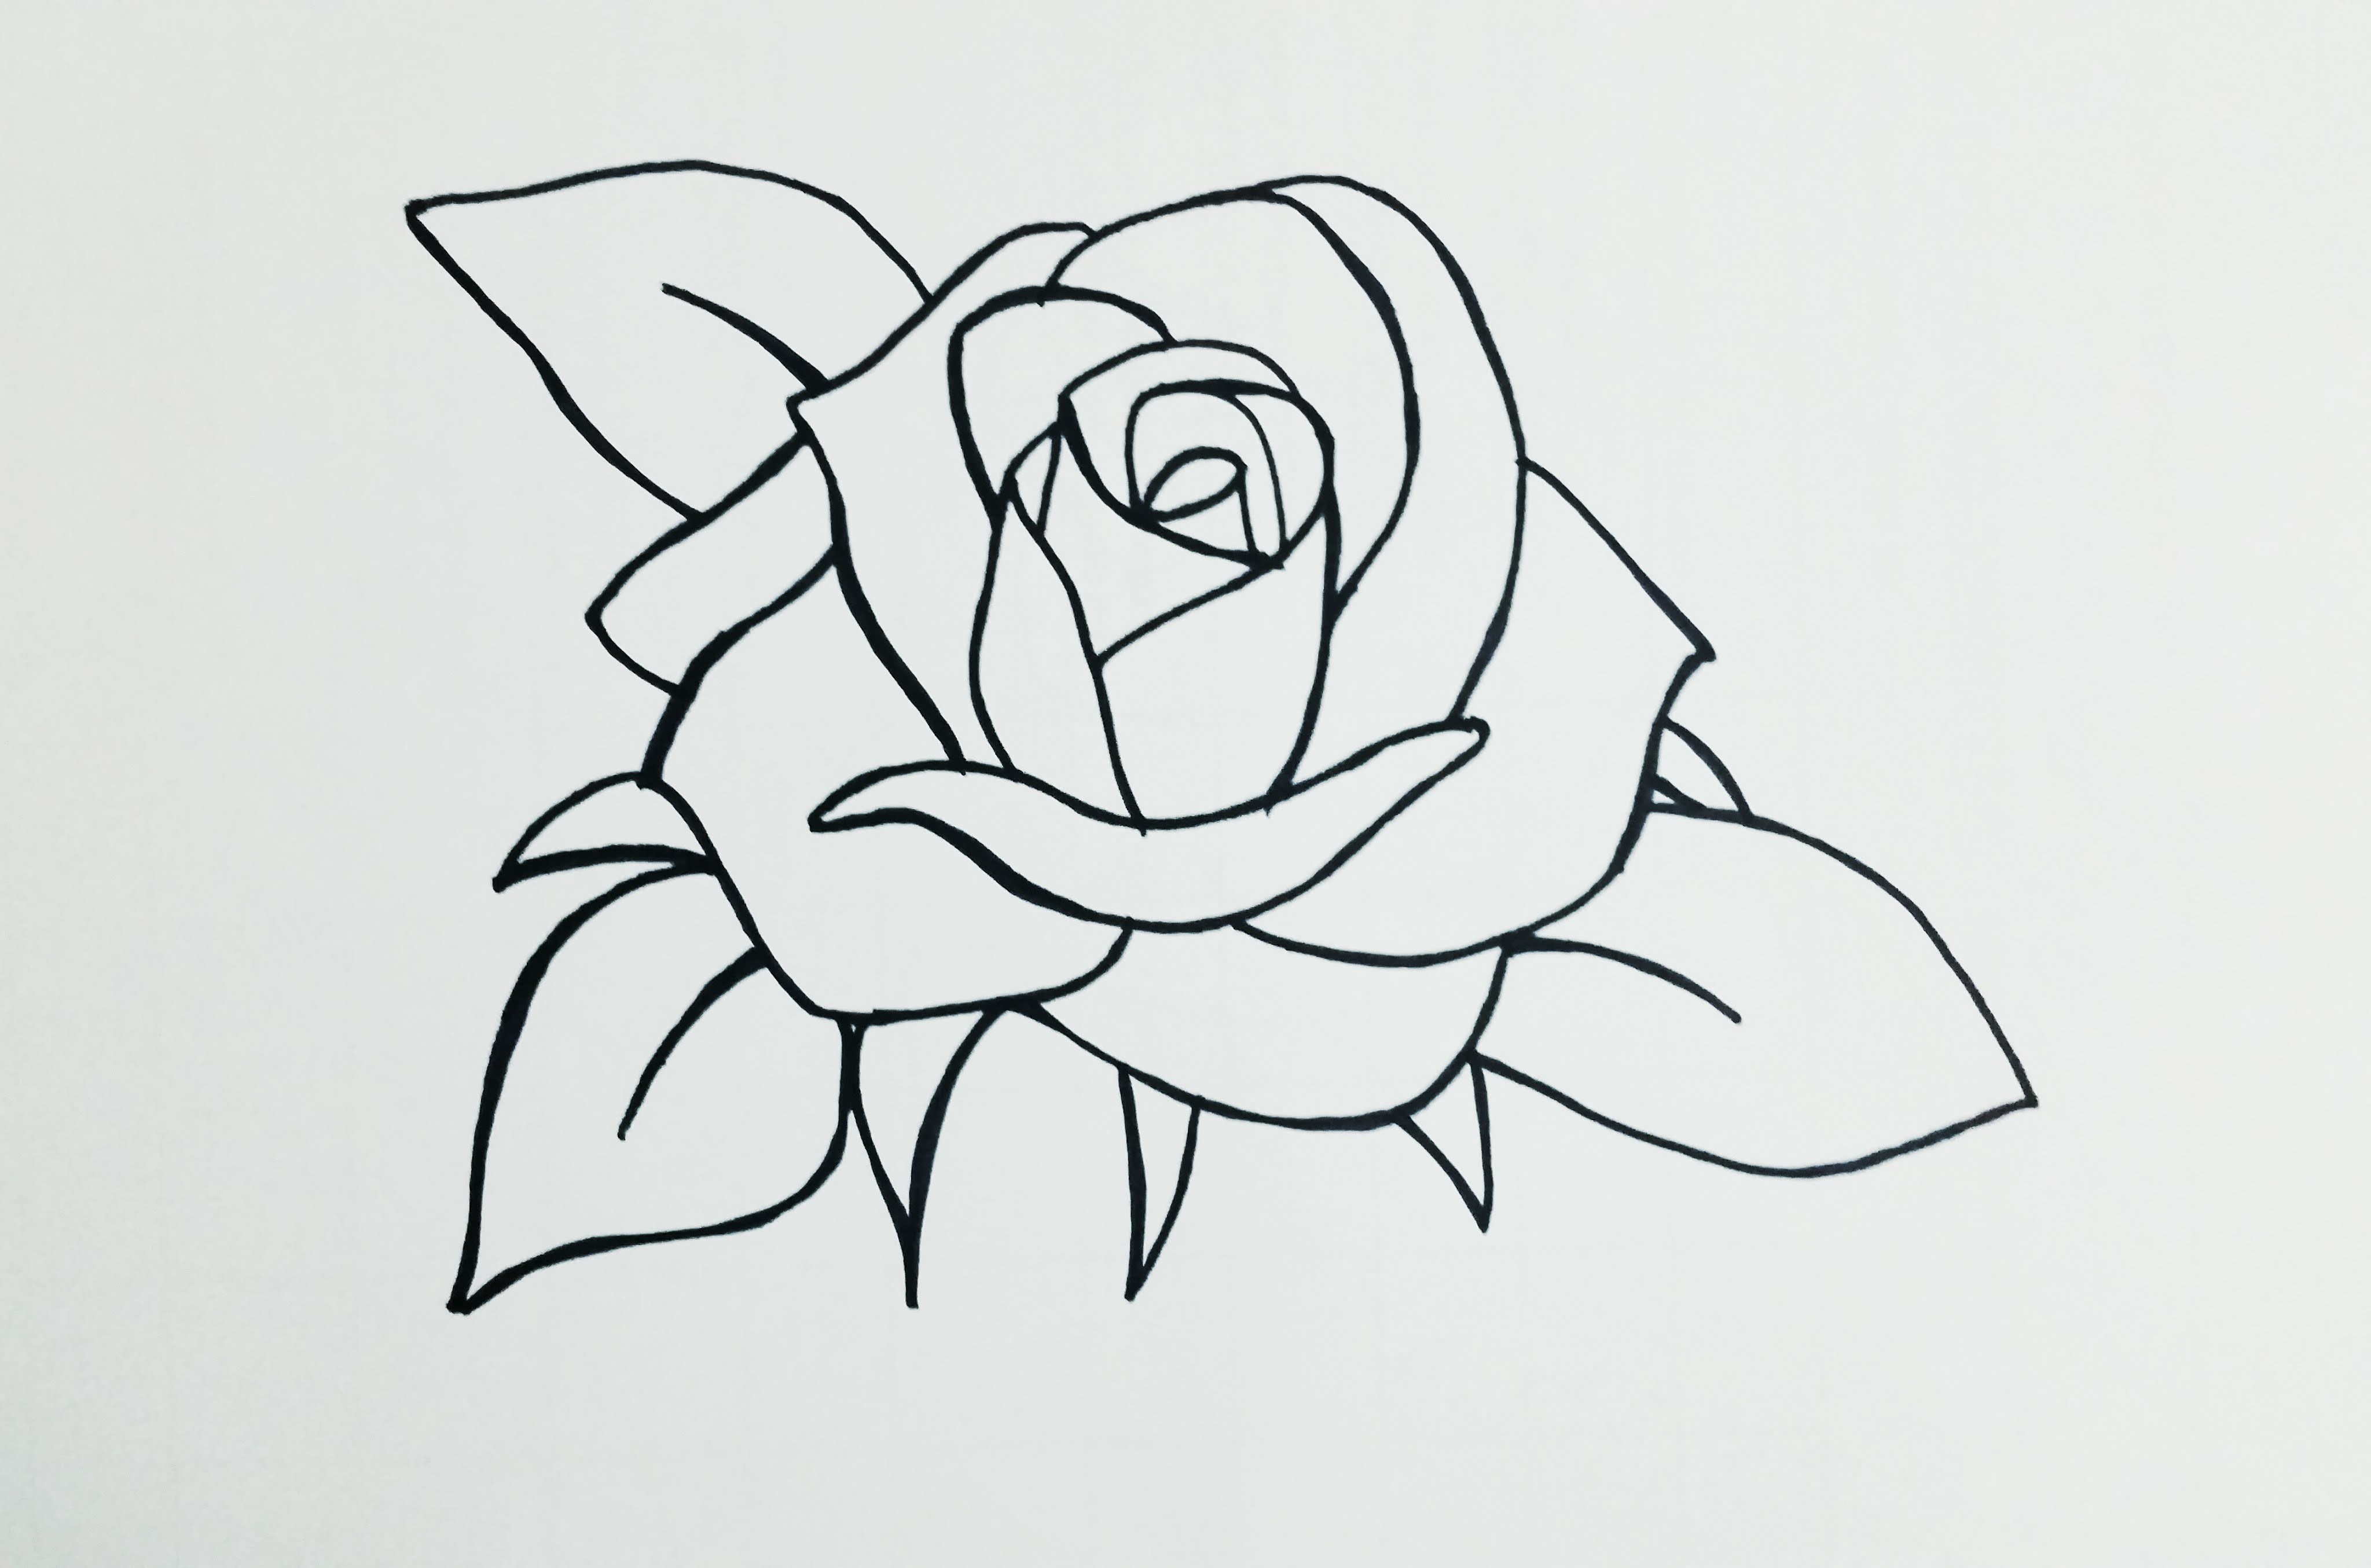 Easy Beginner Rose Easy Beginner Flower Sketch canvasdepot